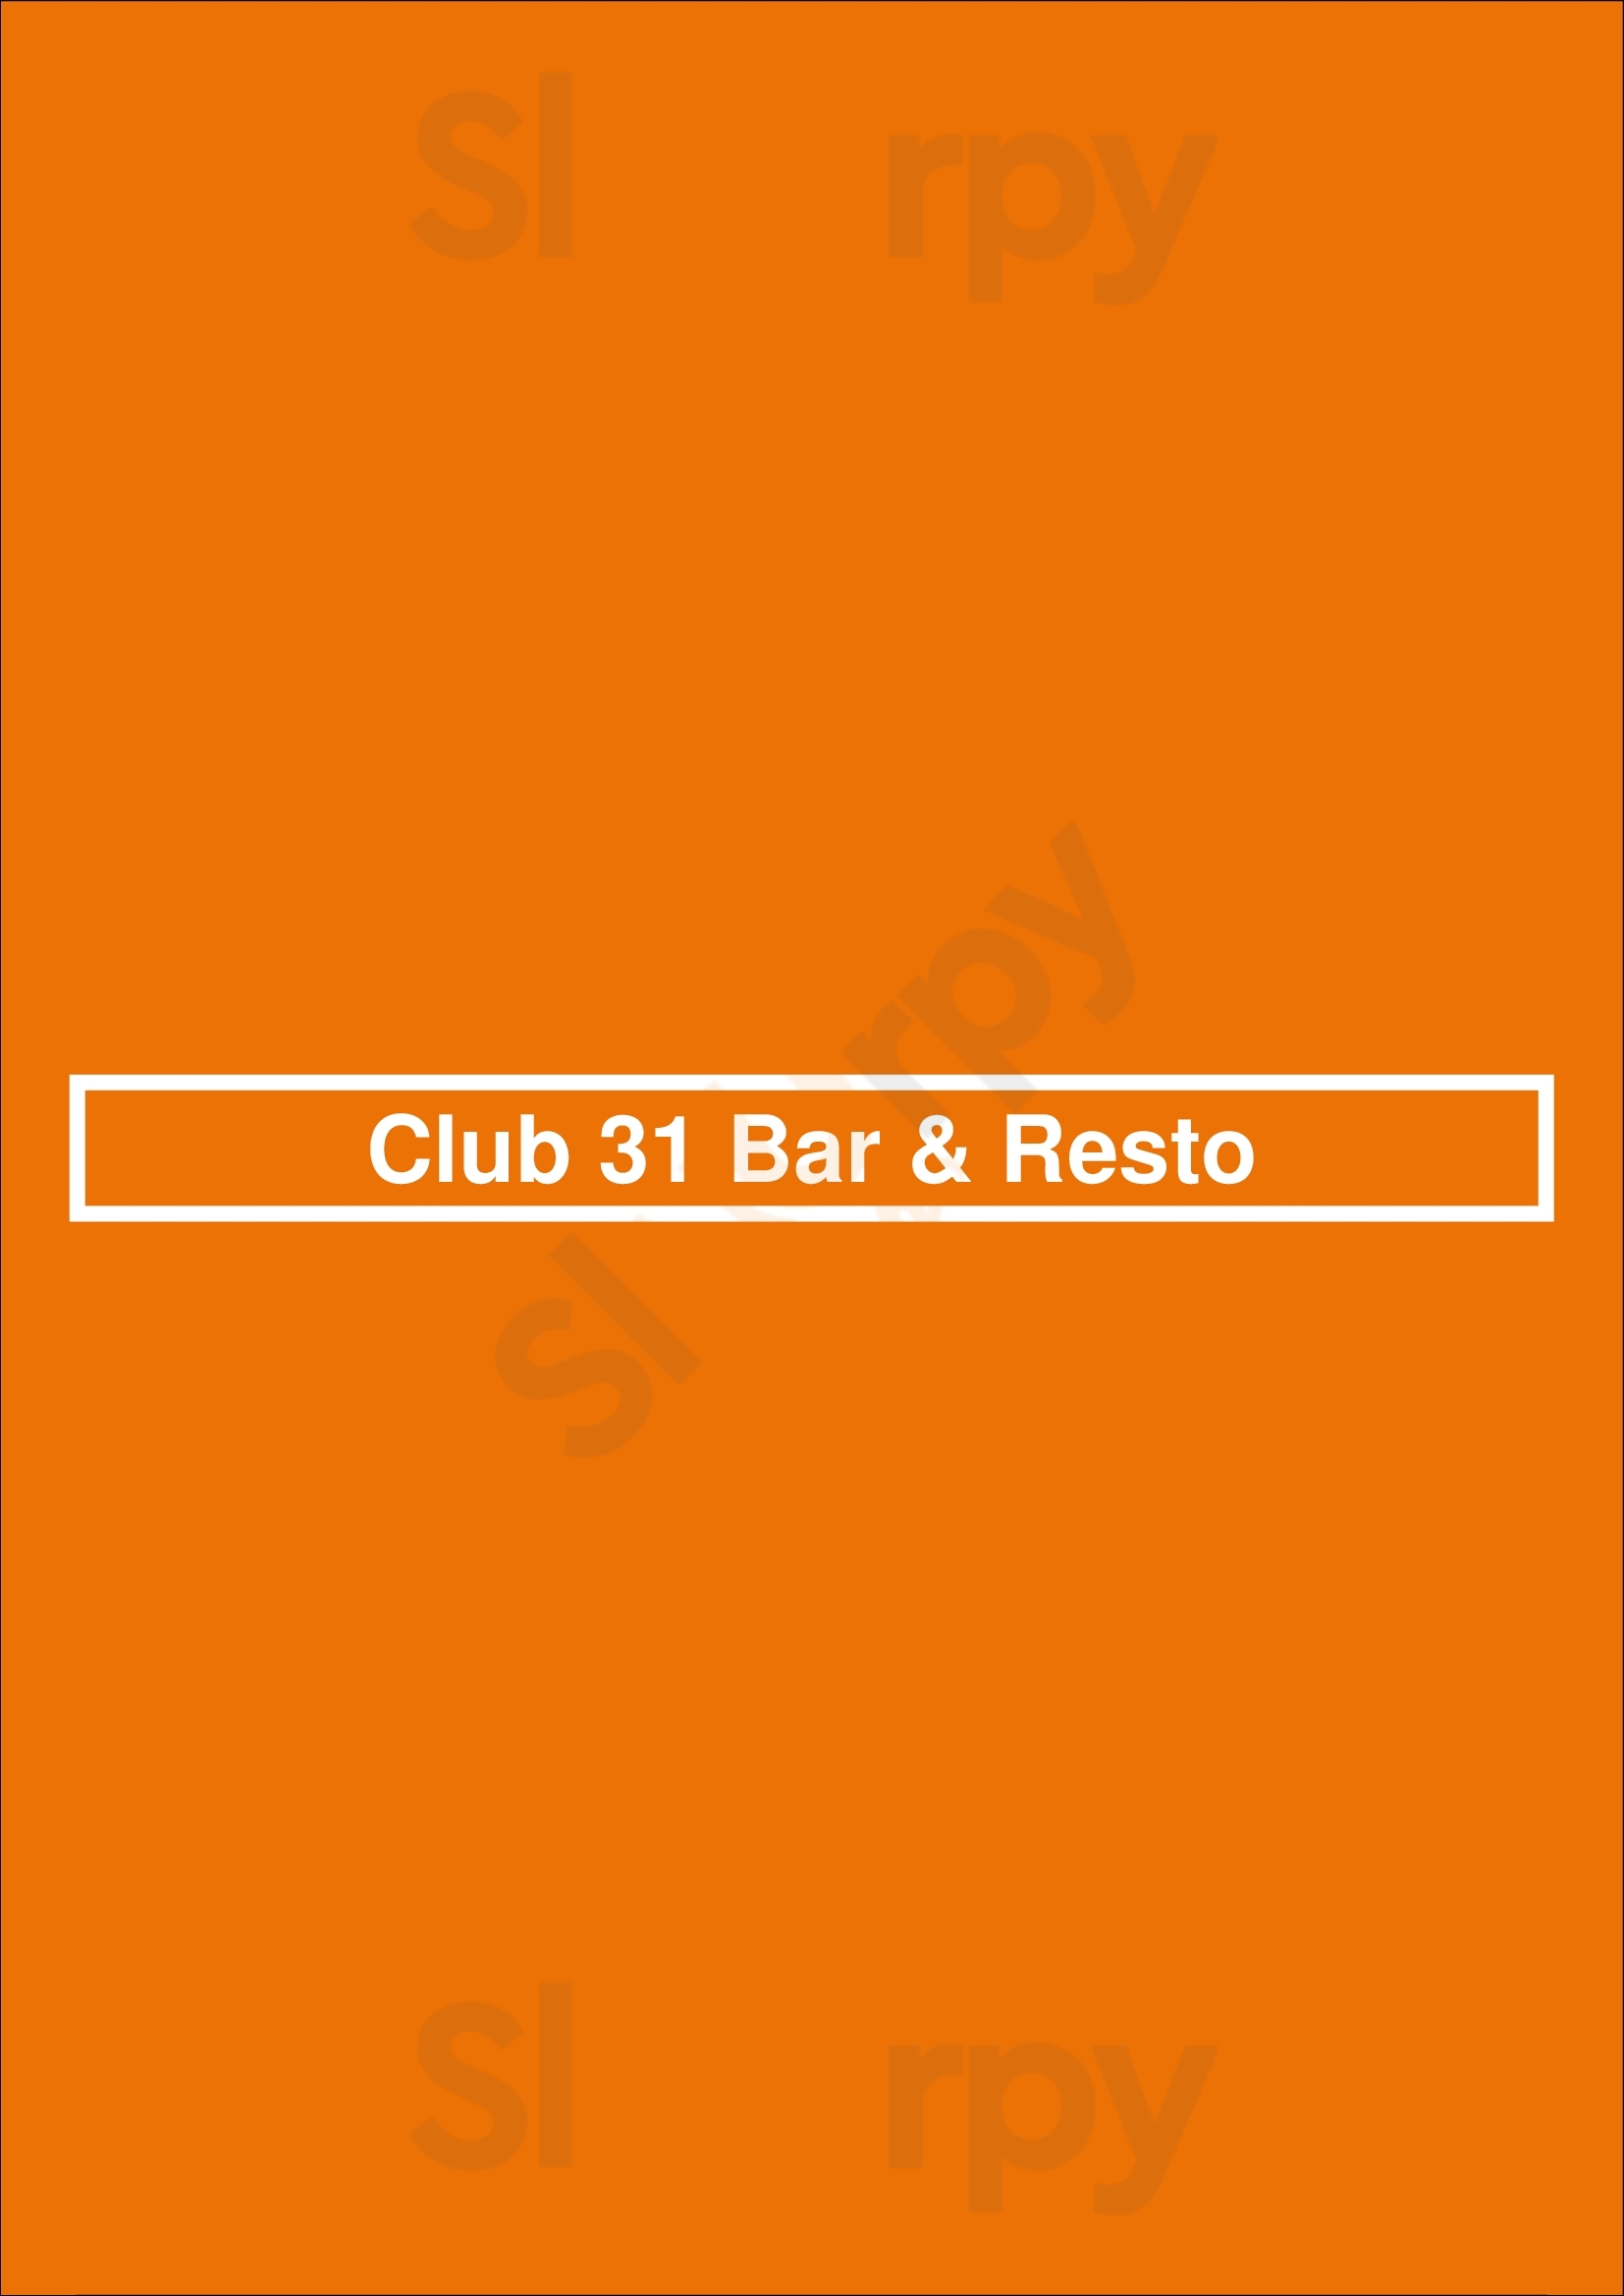 Club 31 Bar & Resto Buenos Aires Menu - 1